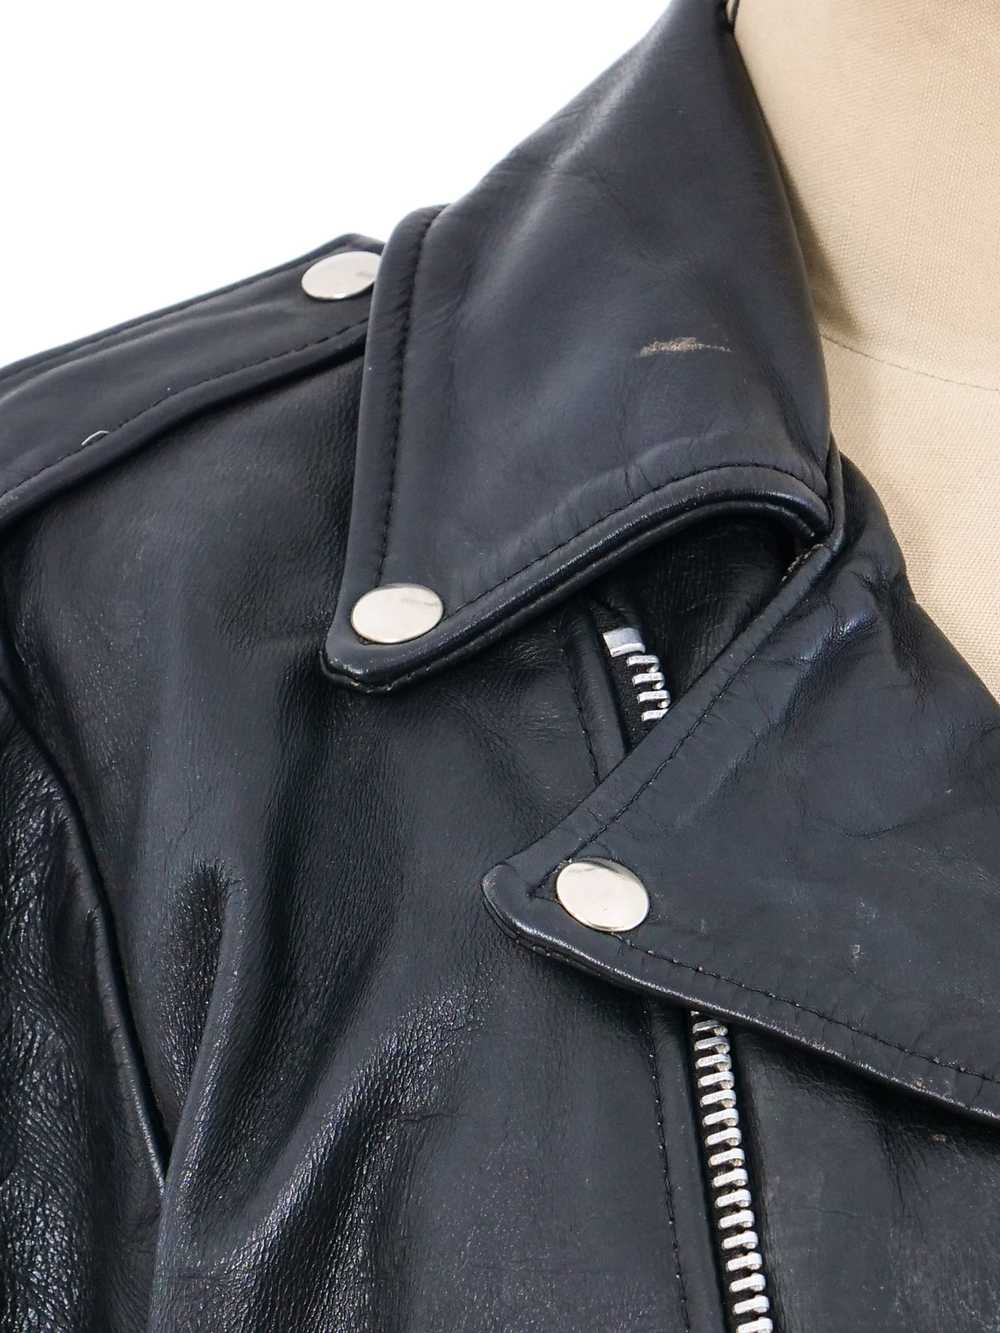 Leather Motorcycle Jacket - image 7